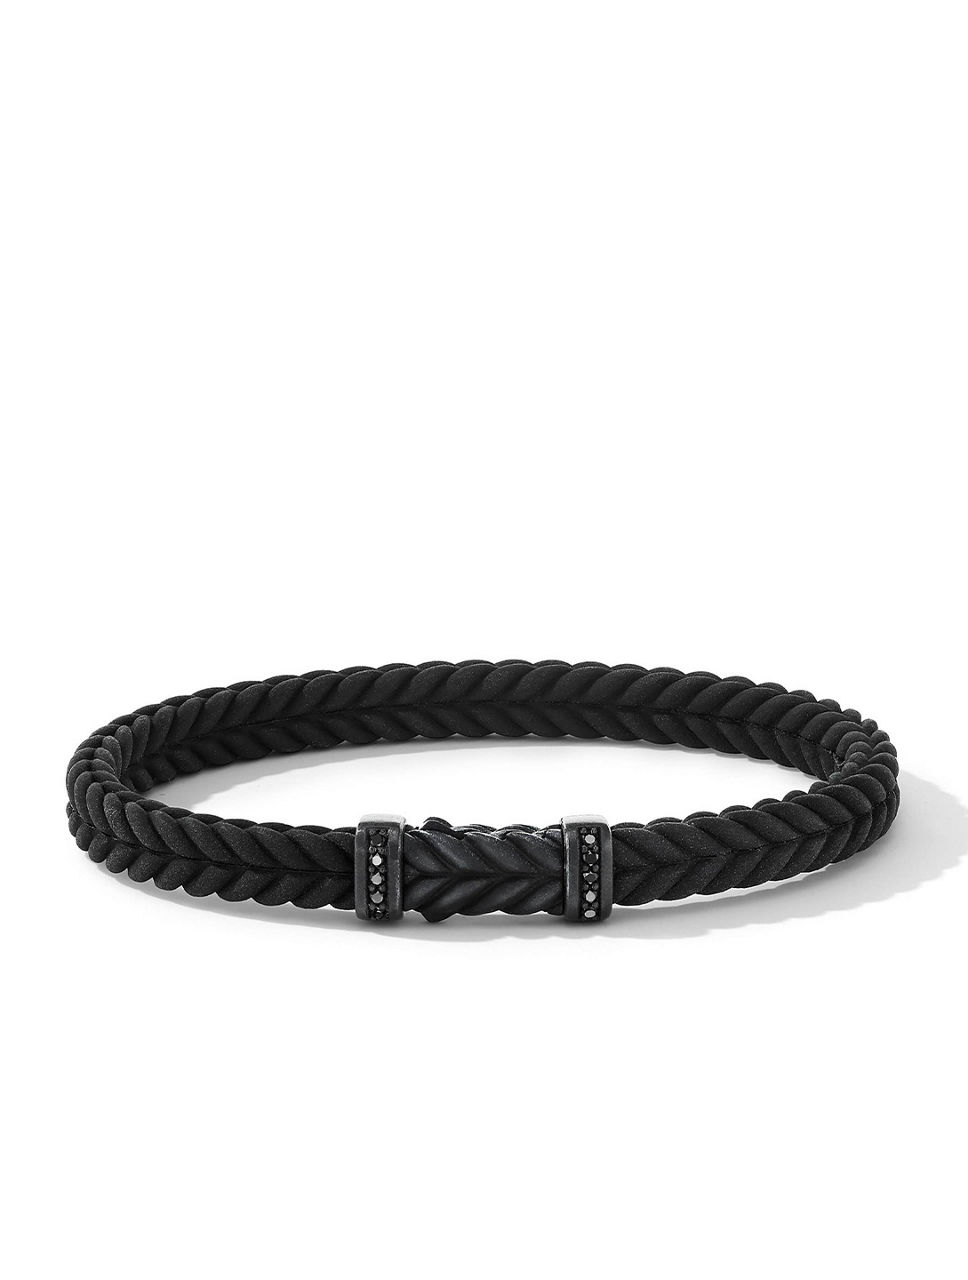 Chevron Black Rubber Bracelet With Titanium And Pavé Diamonds